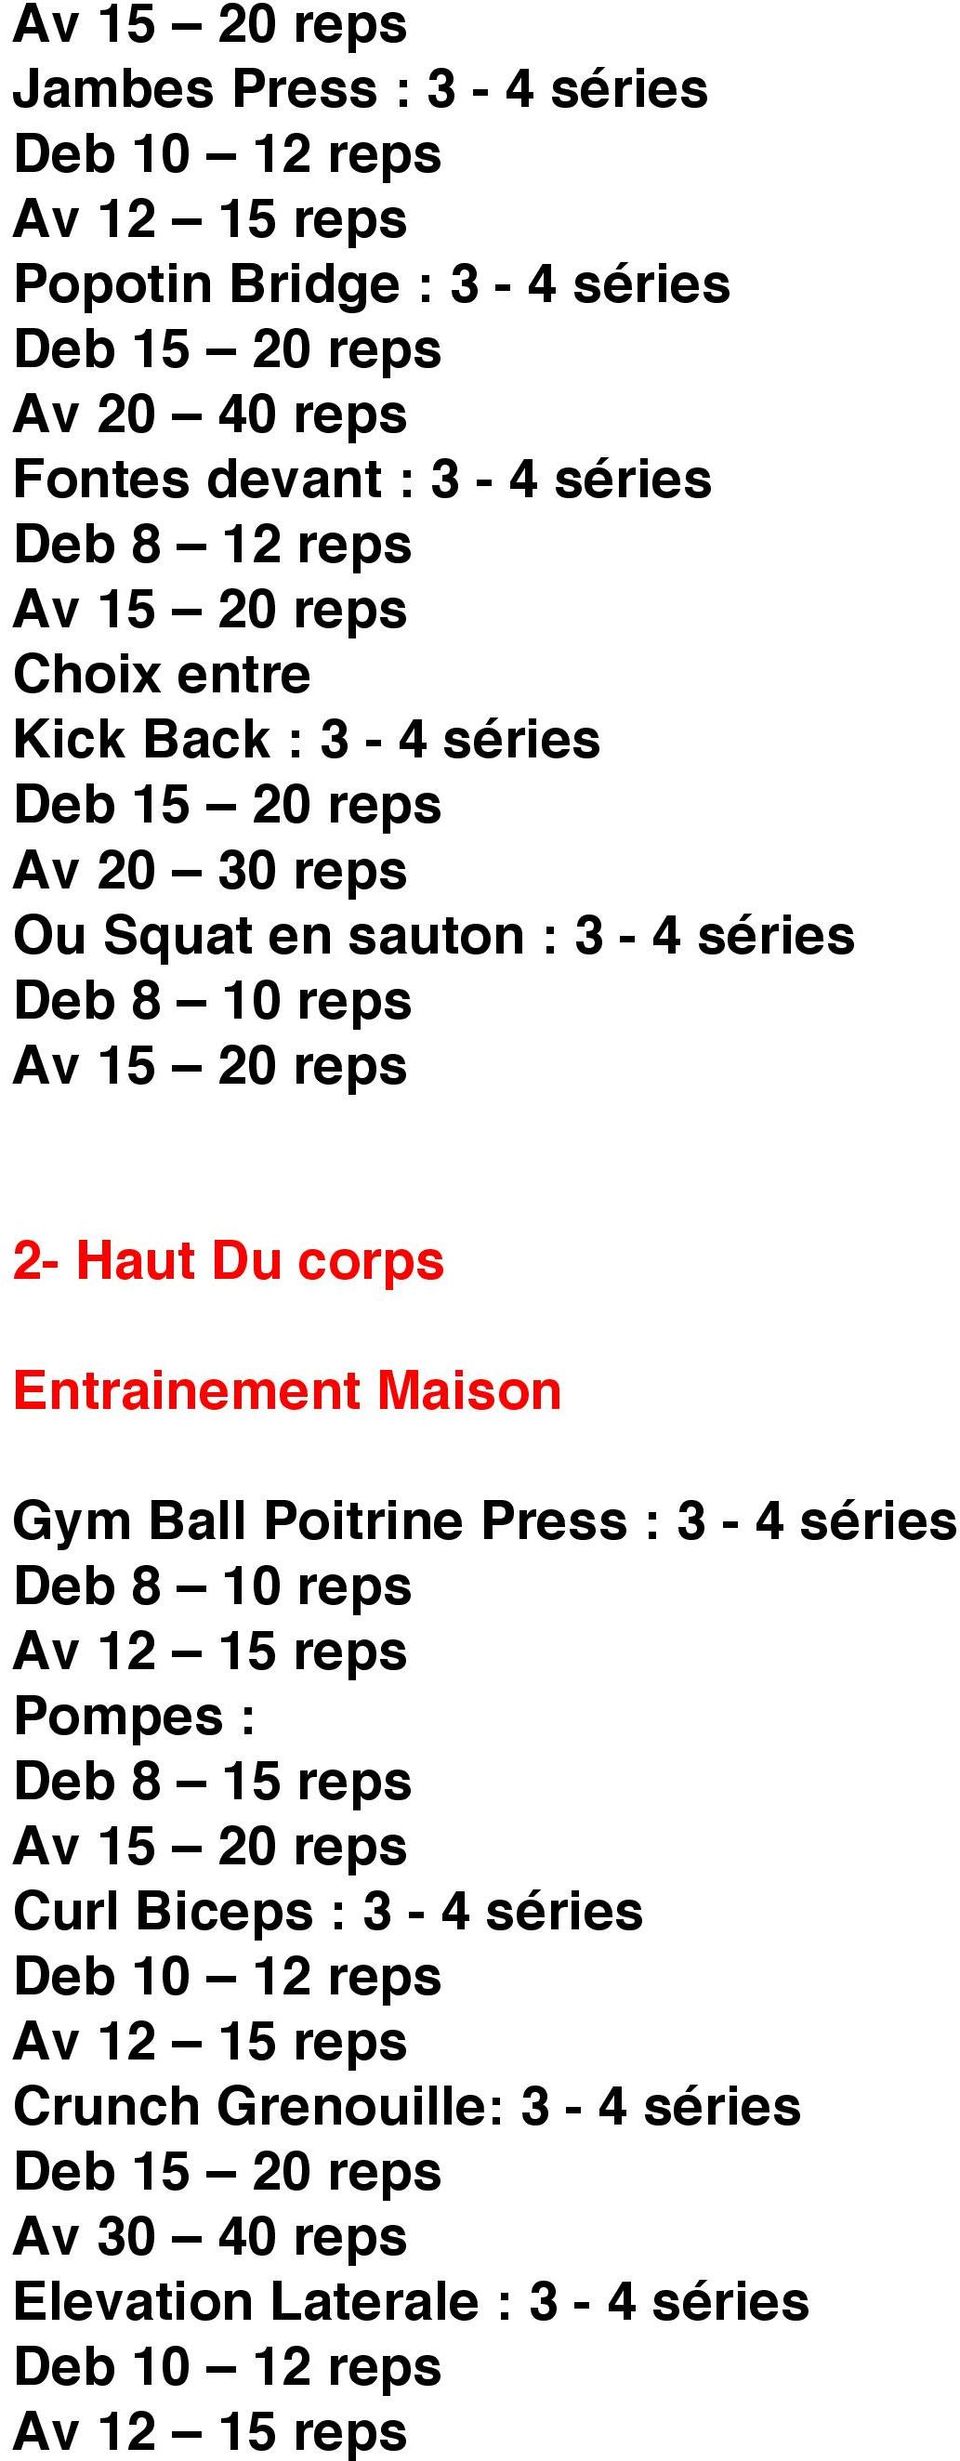 Haut Du corps Entrainement Maison Gym Ball Poitrine Press : 3-4 séries Deb 8 10 reps Pompes : Deb 8 15